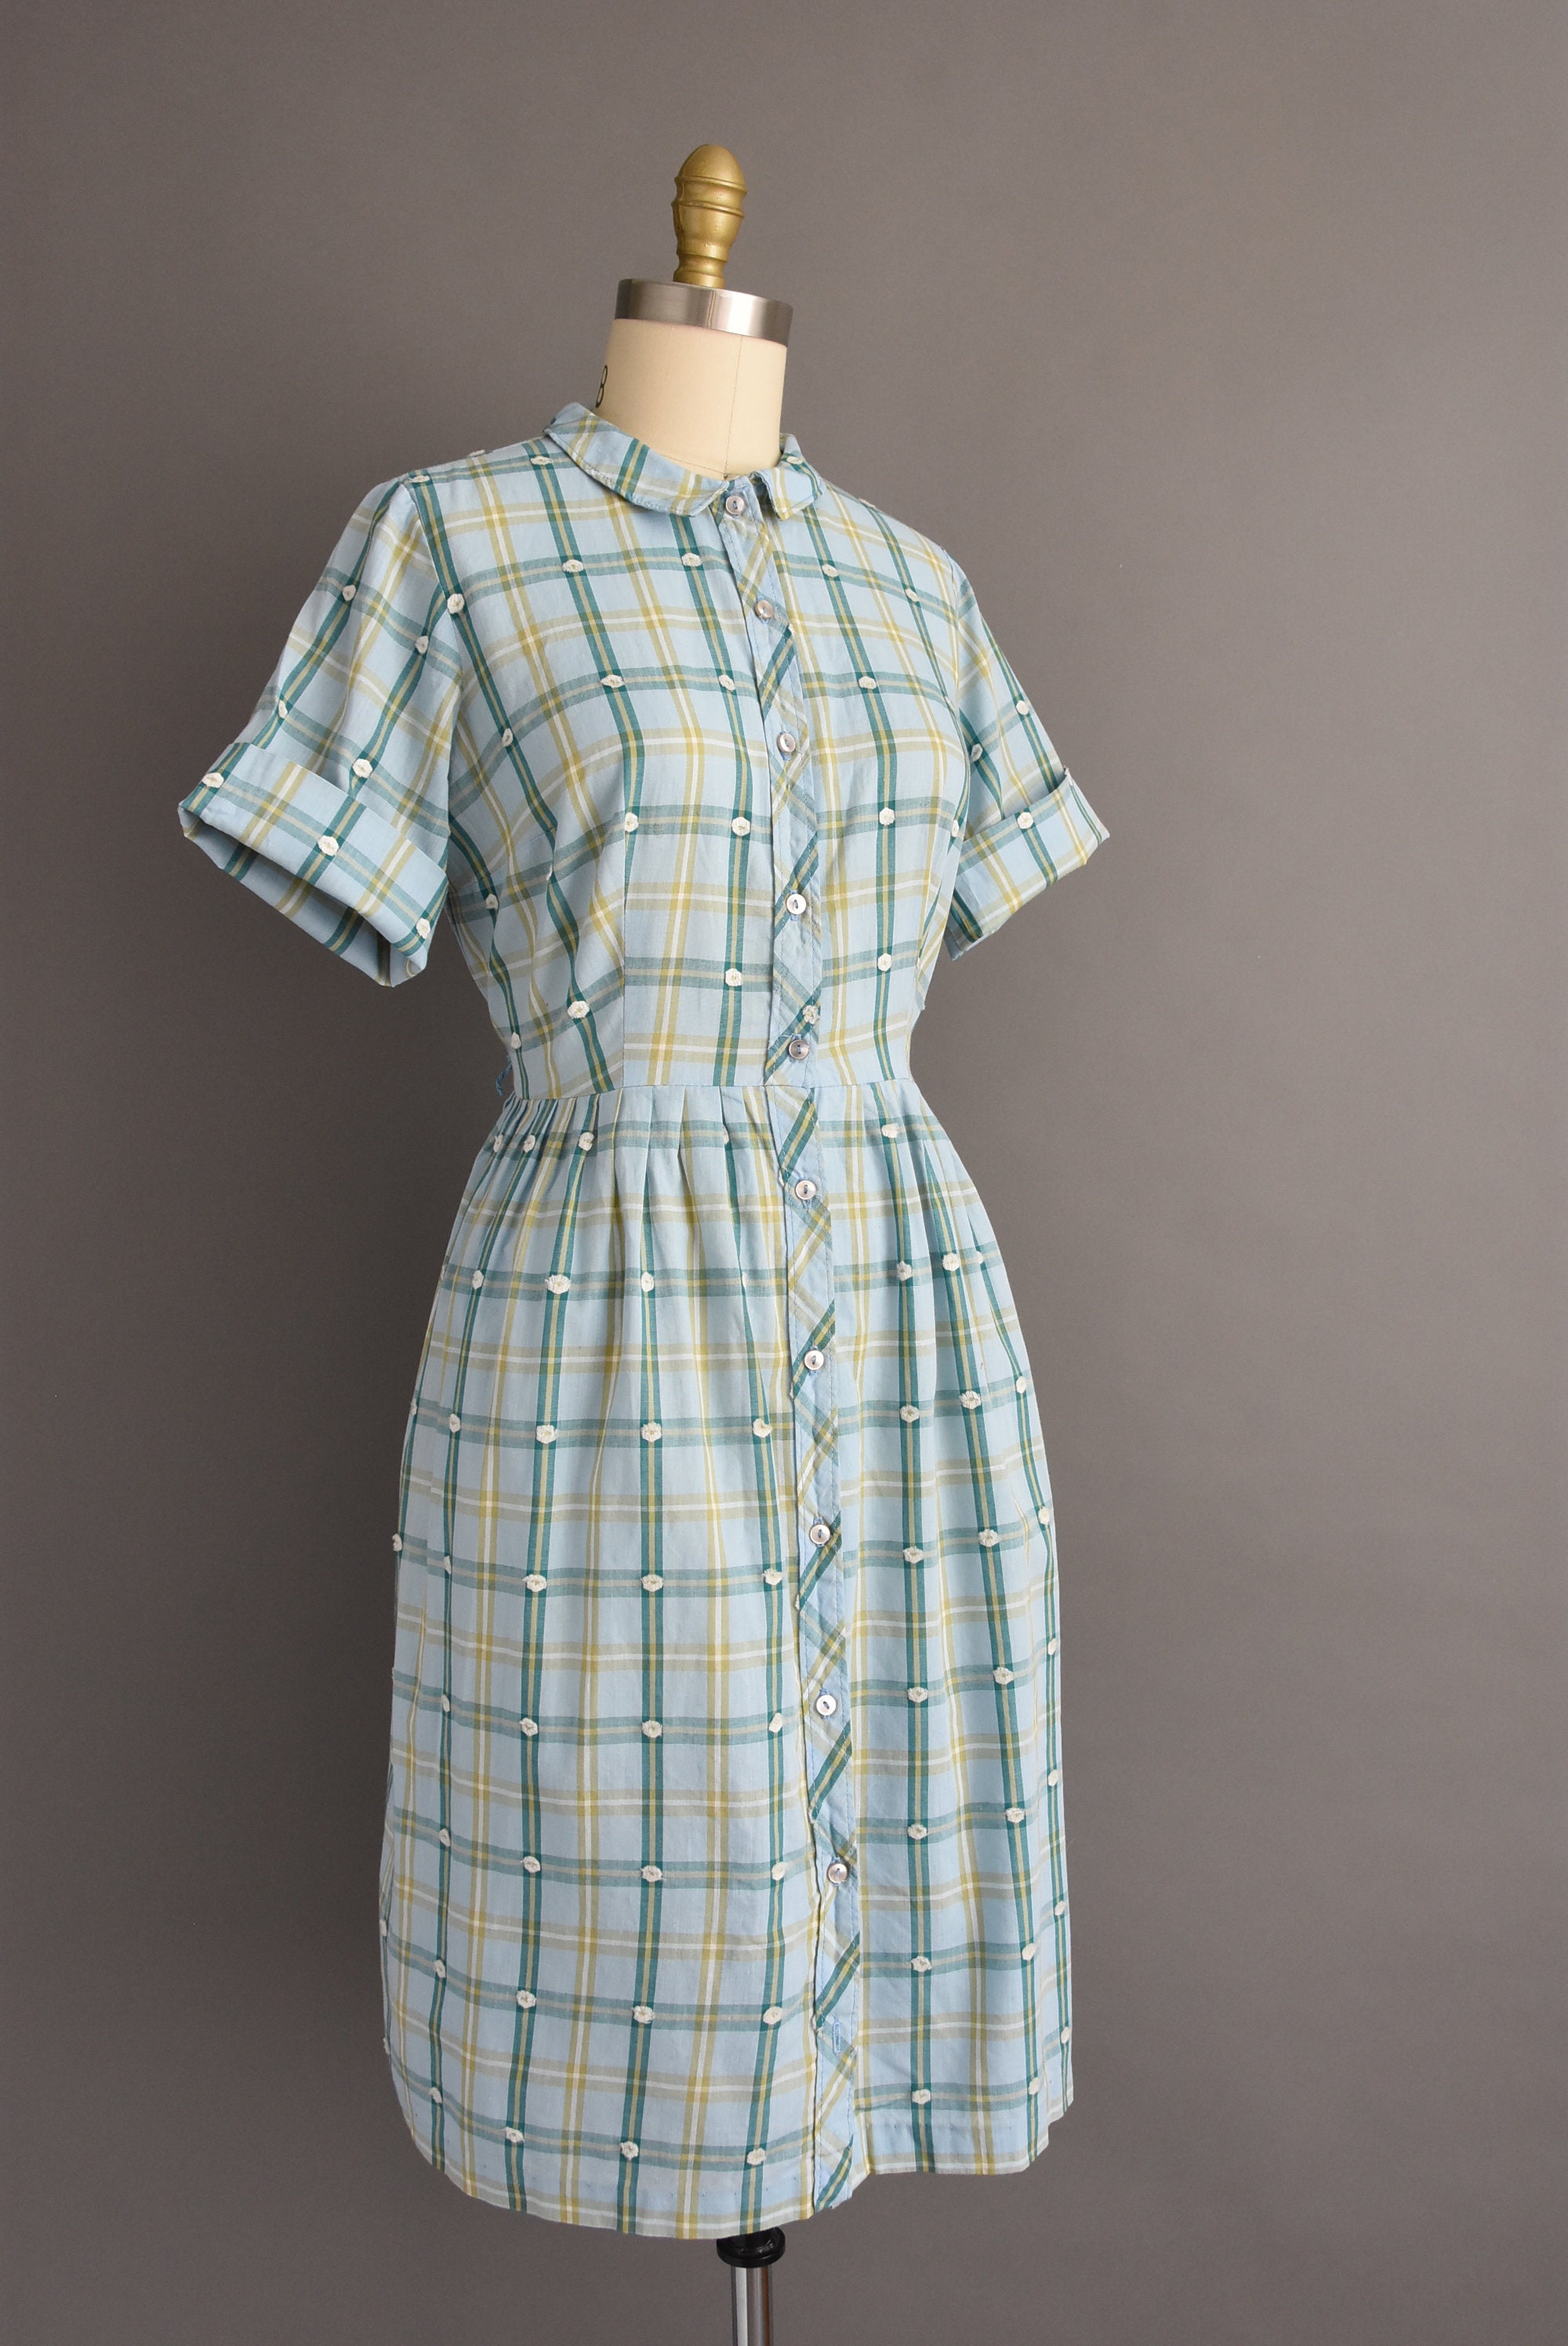 1950s vintage dress Adorable Blue Cotton Plaid Print Short | Etsy